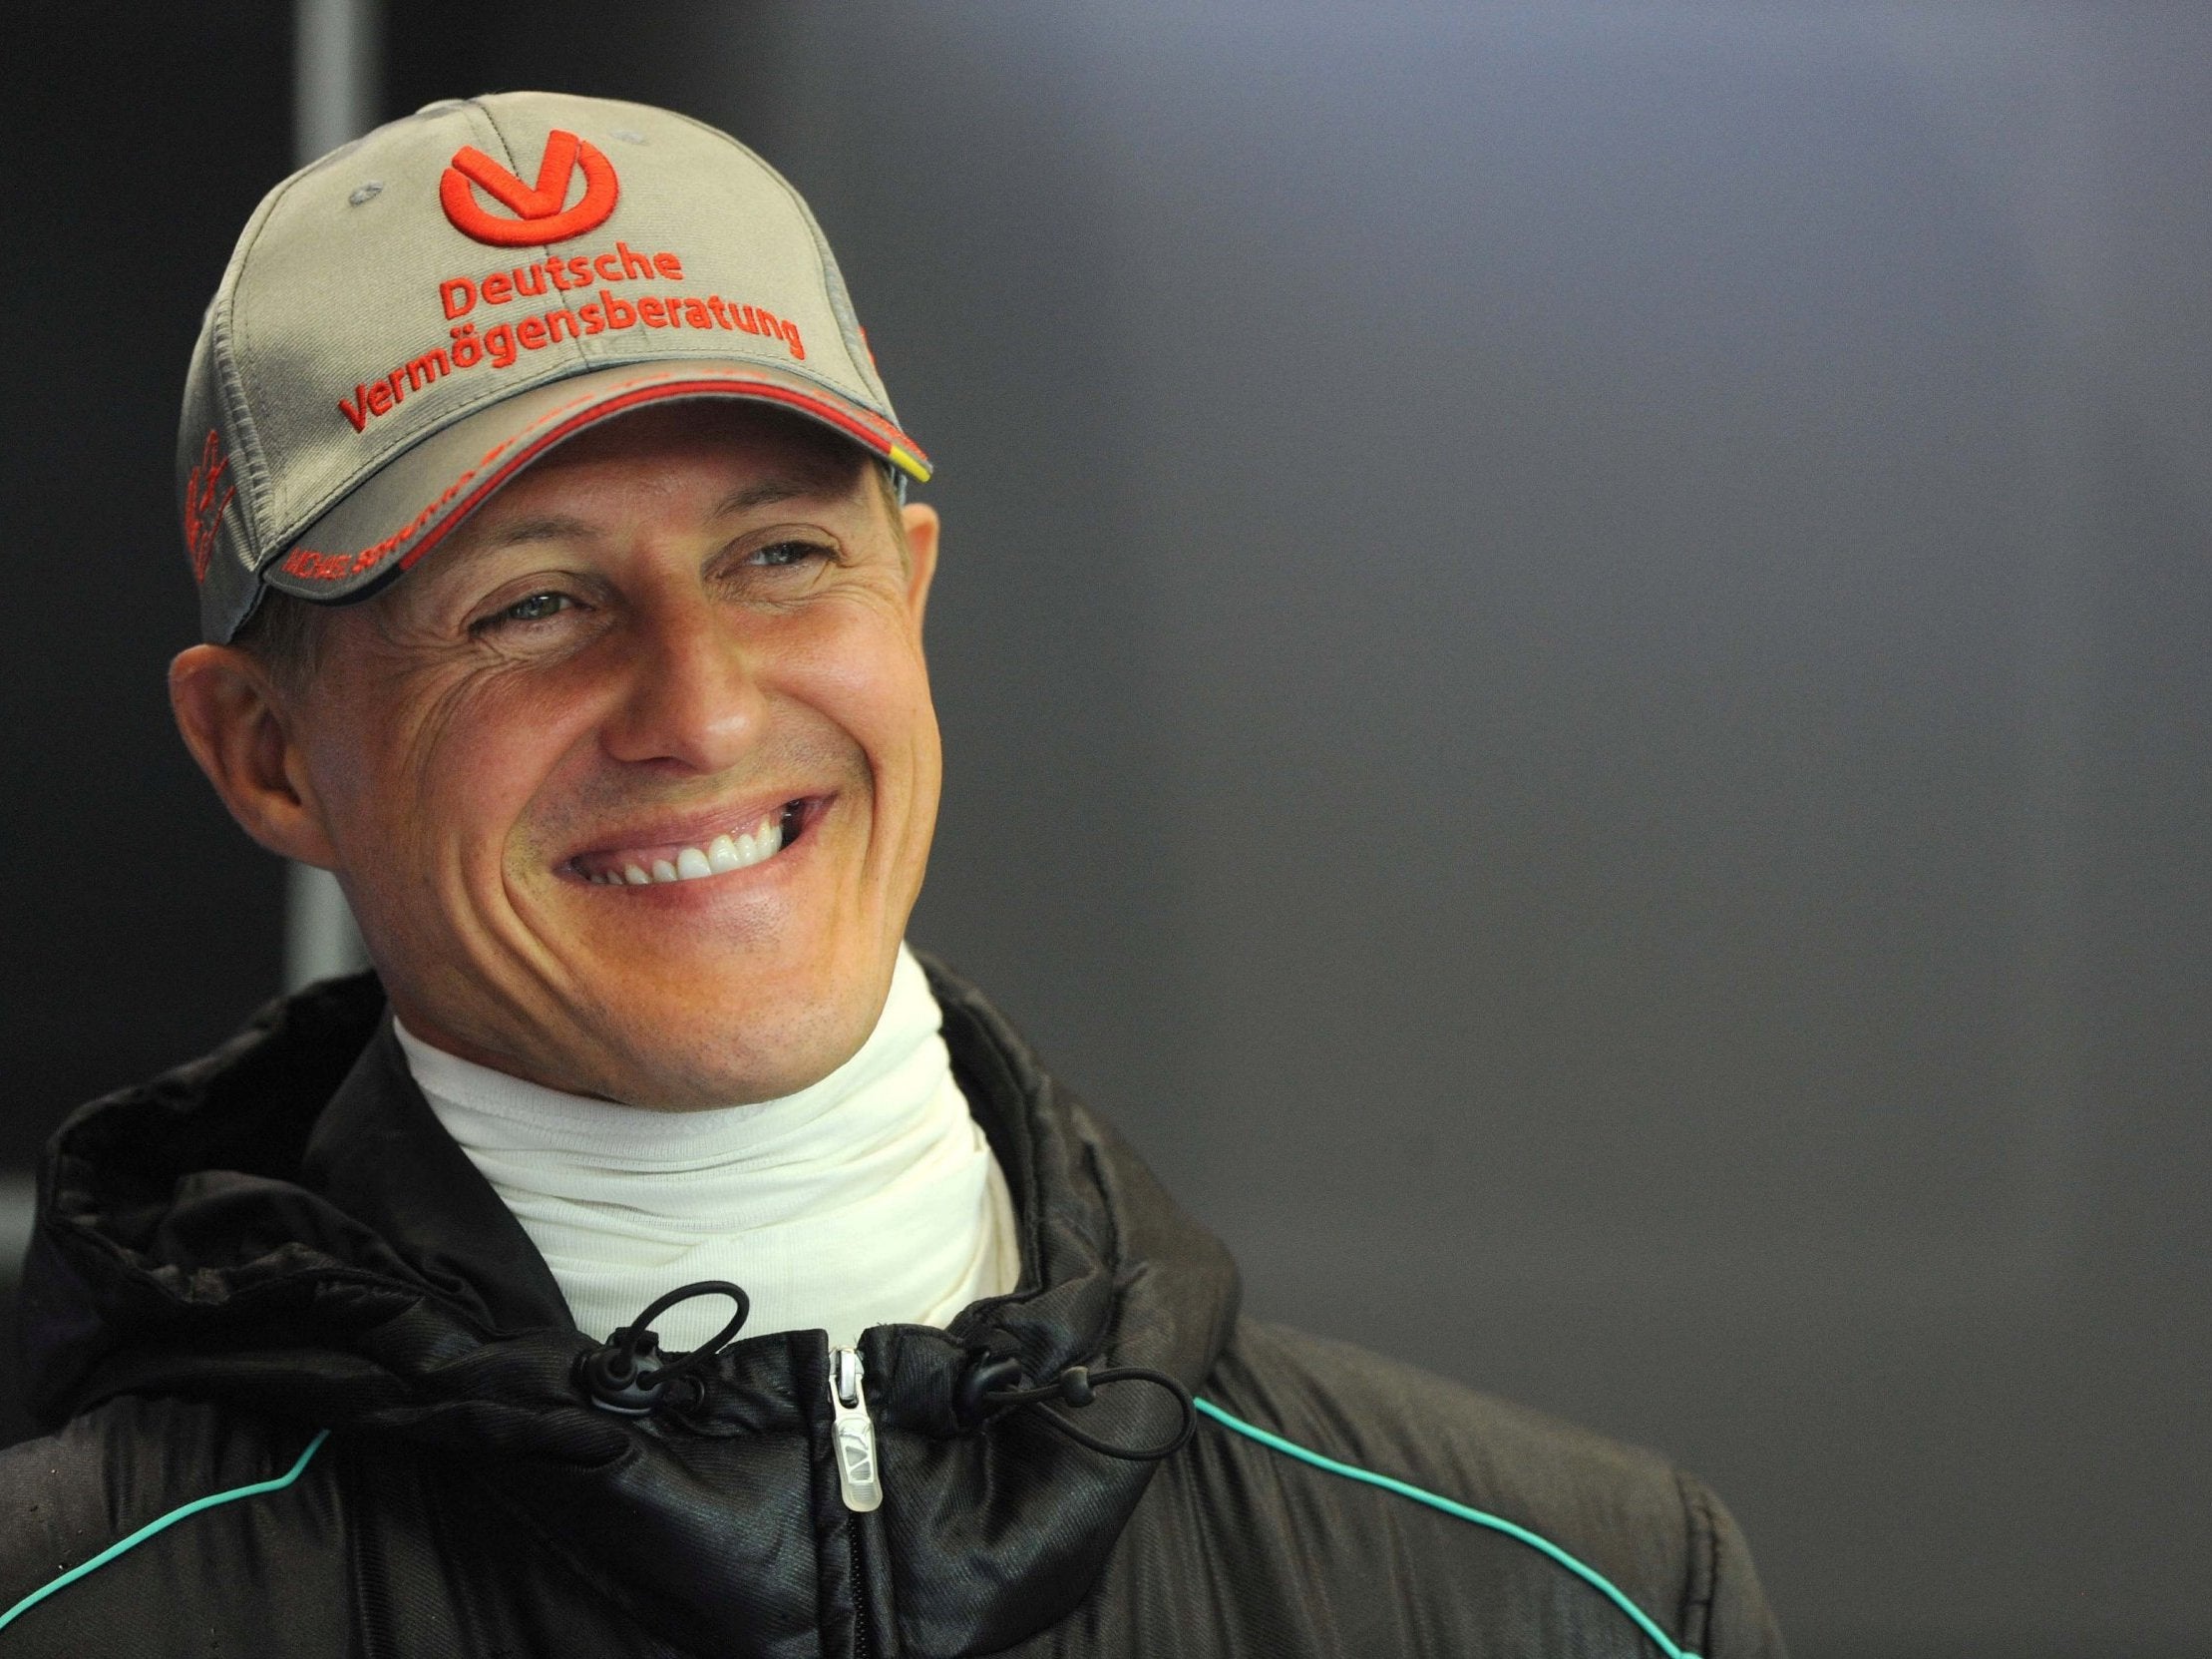 Michael Schumacher 2019 Update